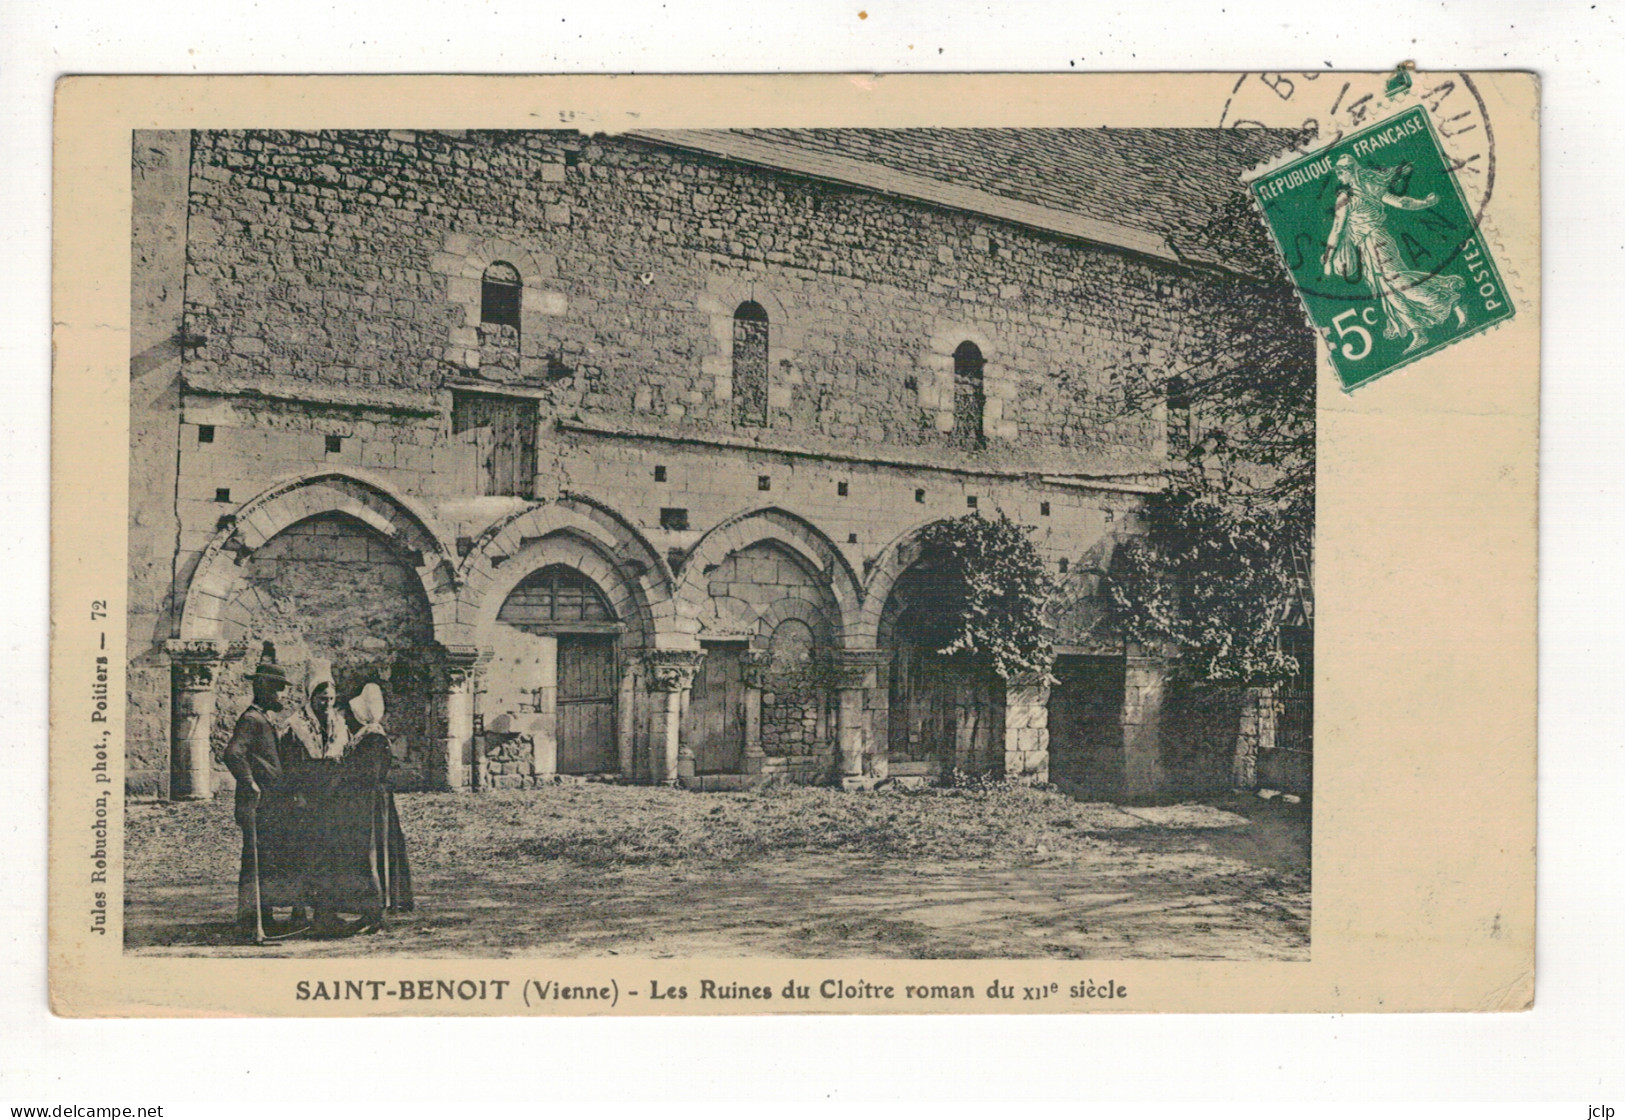 SAINT-BENOIT - Les Ruines Du Cloître Roman Du XIIe Siècle. - Saint Benoit